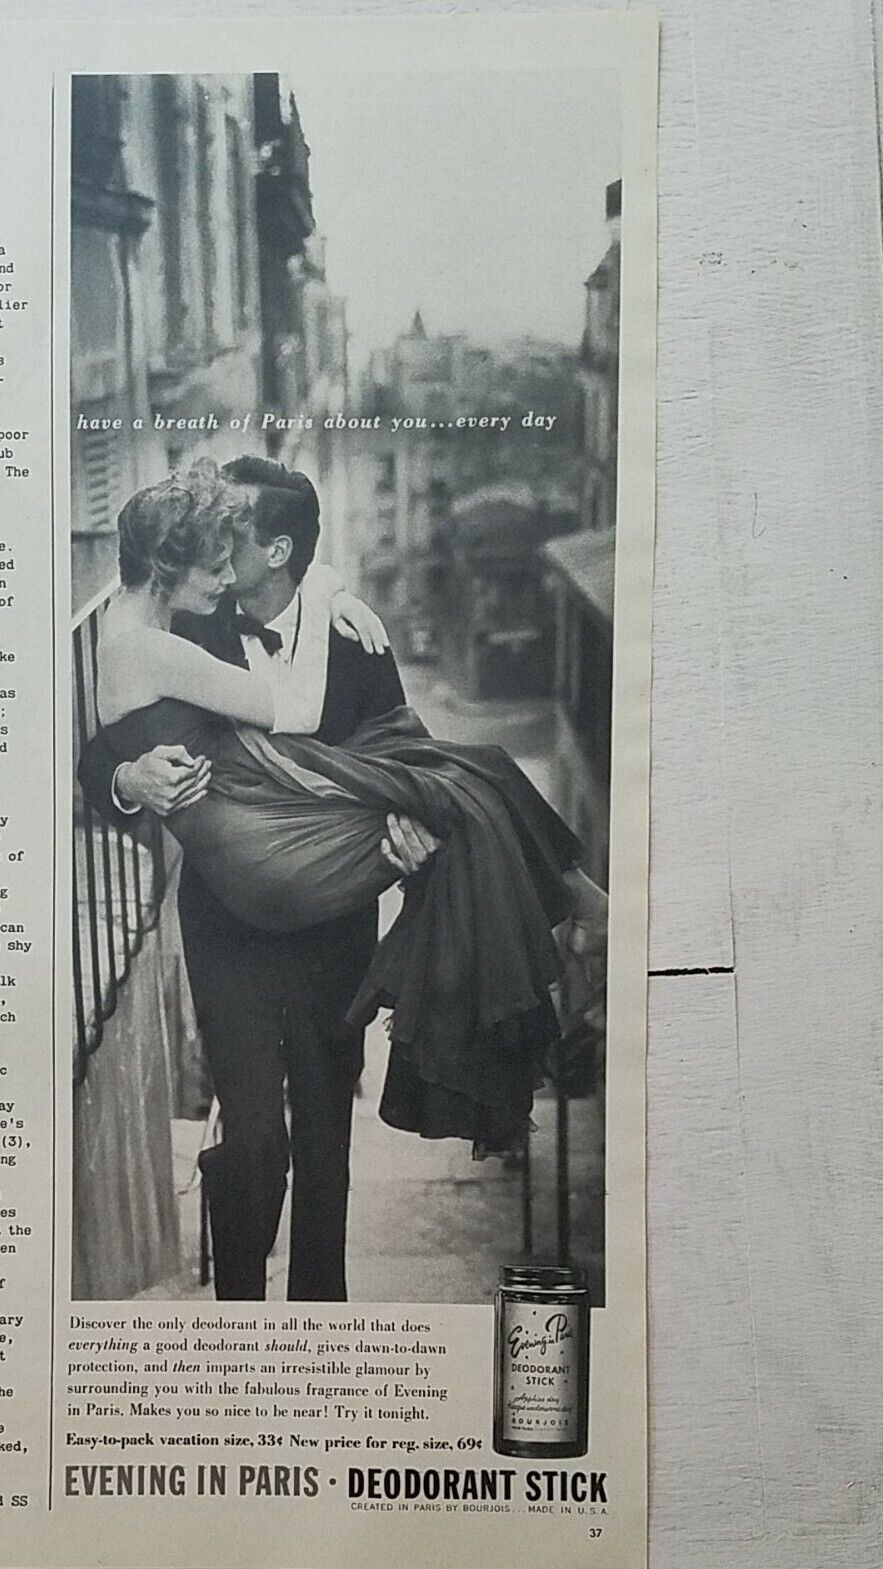 1958 Bourjois Evening in Paris deodorant stick romantic couple vintage ad